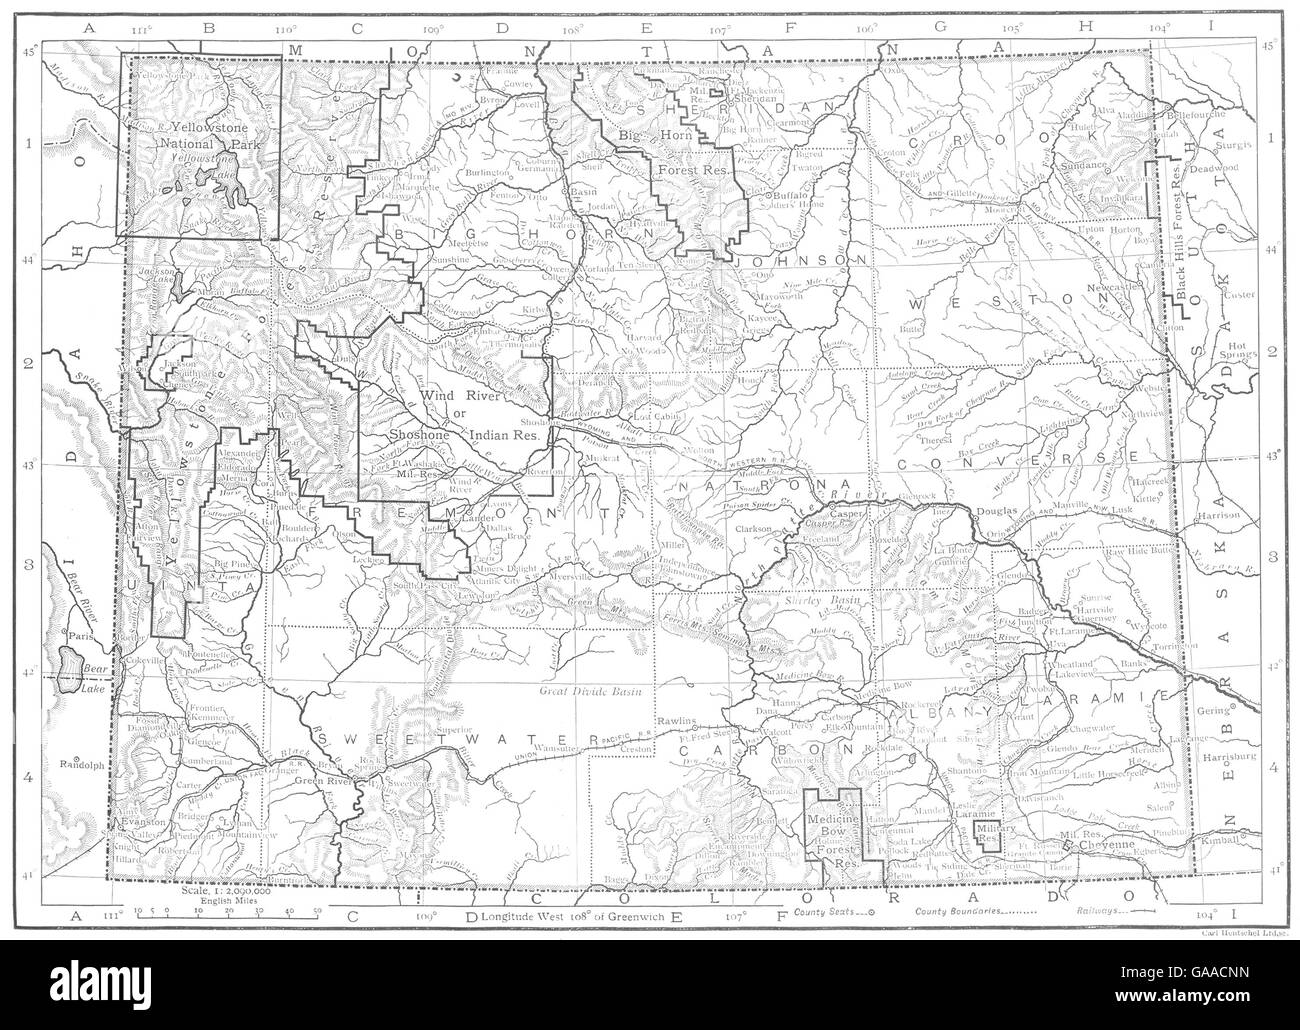 WYOMING: Wyoming state map, 1910 Stock Photo